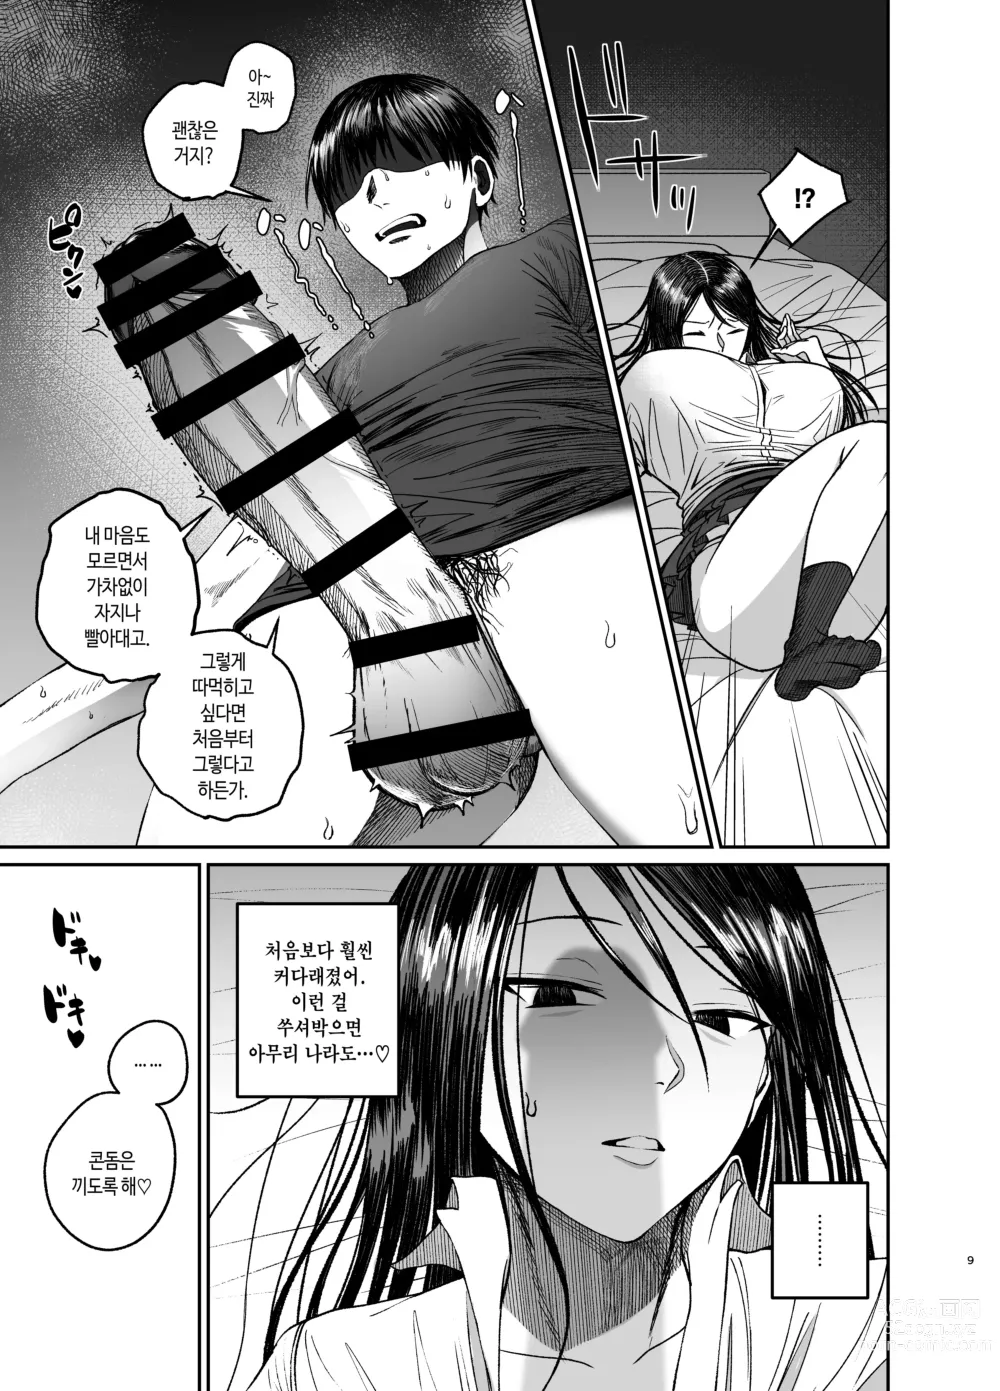 Page 9 of doujinshi 누나로 딸치는 동생과 자위 마려운 누나가 조우한 결과